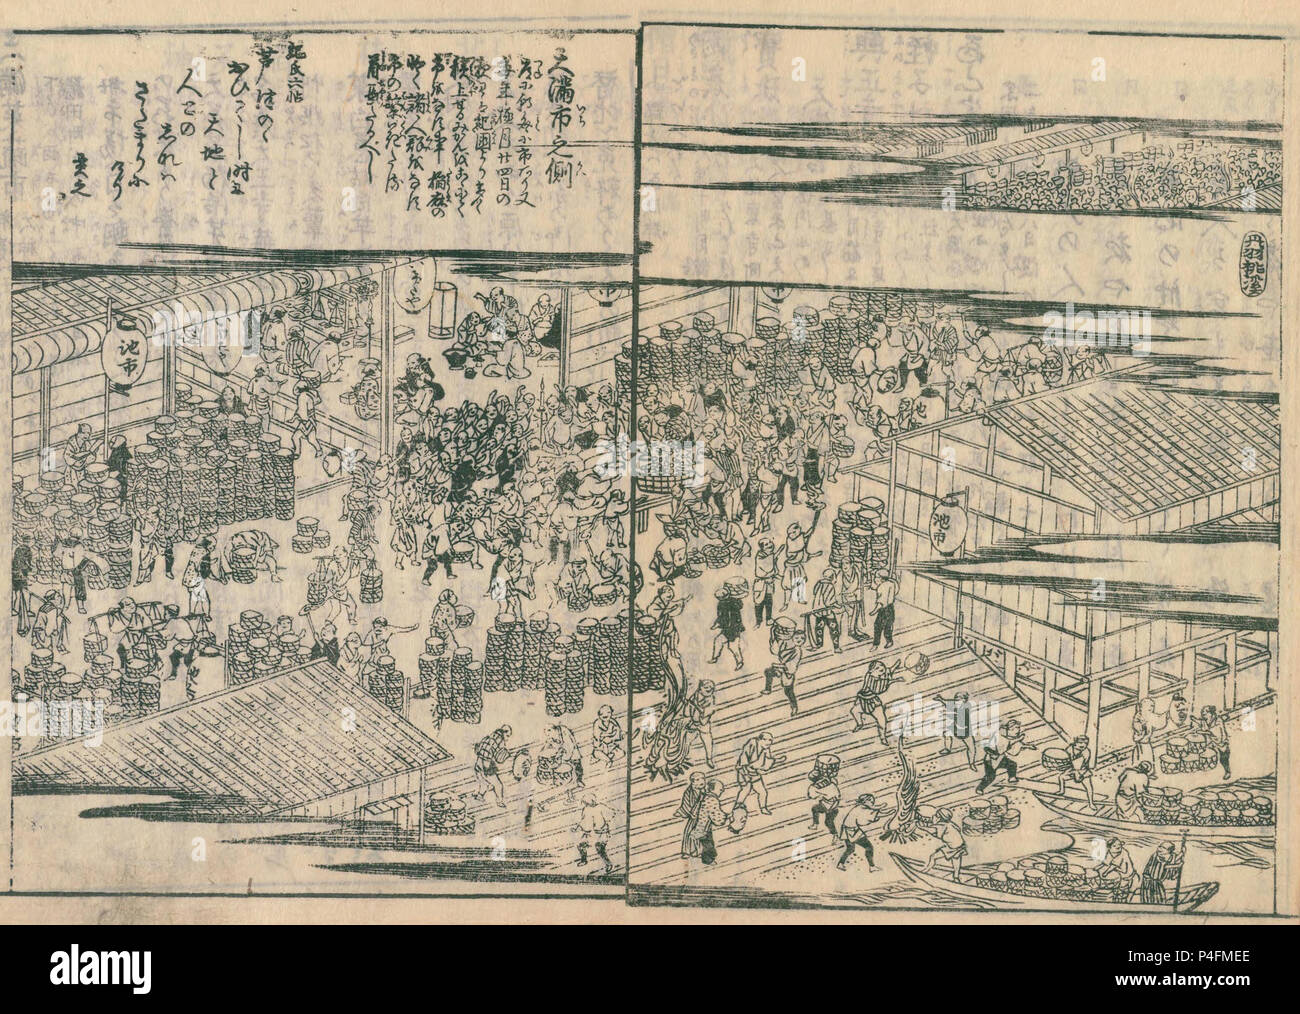 Tenma Fresh Market, aus Settsu meisho zue, veröffentlicht 1798 Stockfoto